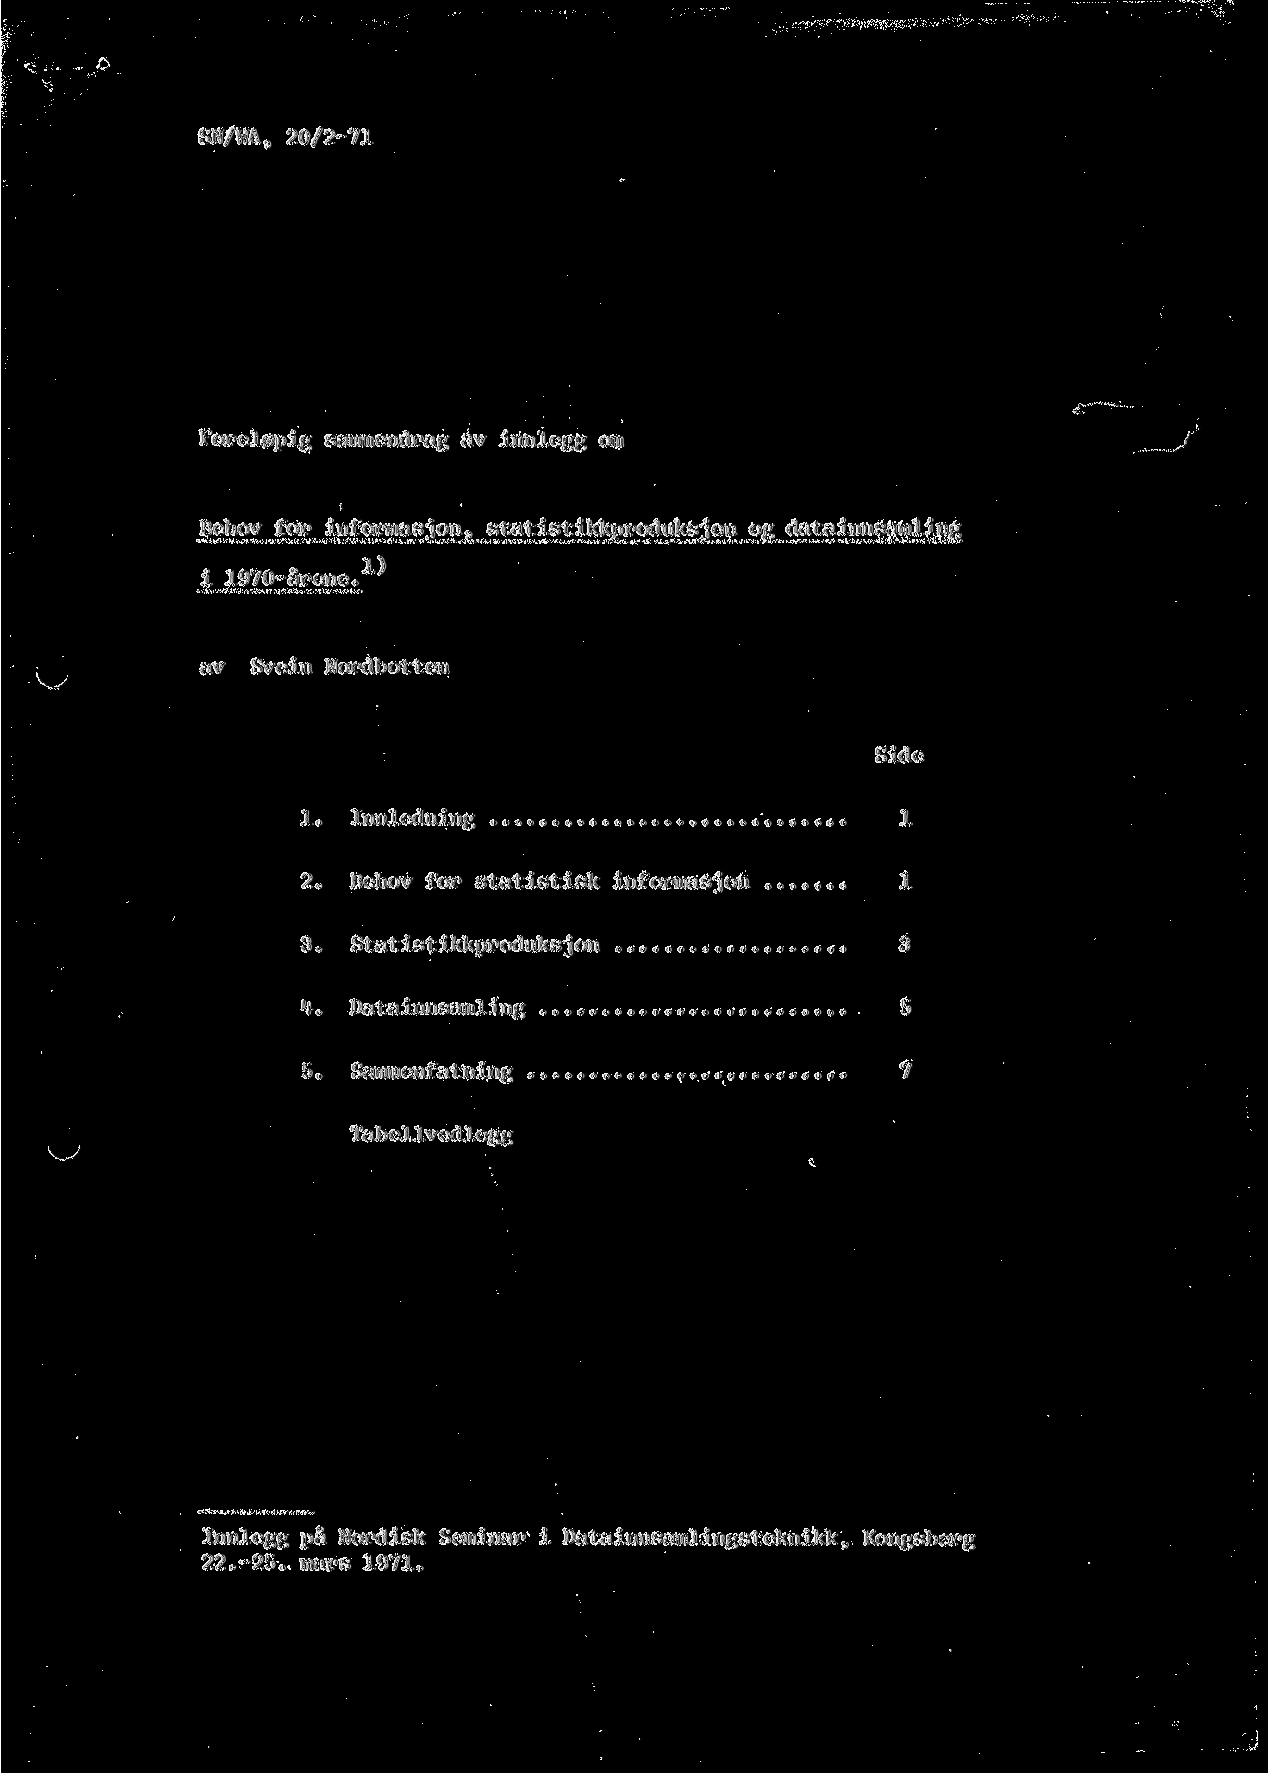 SN/WA, 20/2-71 Forel0pig sammendrag av innlegg om Behov for informasjon, statistikkproduksjon og datainnsamling i 1970-arene. 1^ av Svein Nordbotten Side 1. Innledning 1 2.